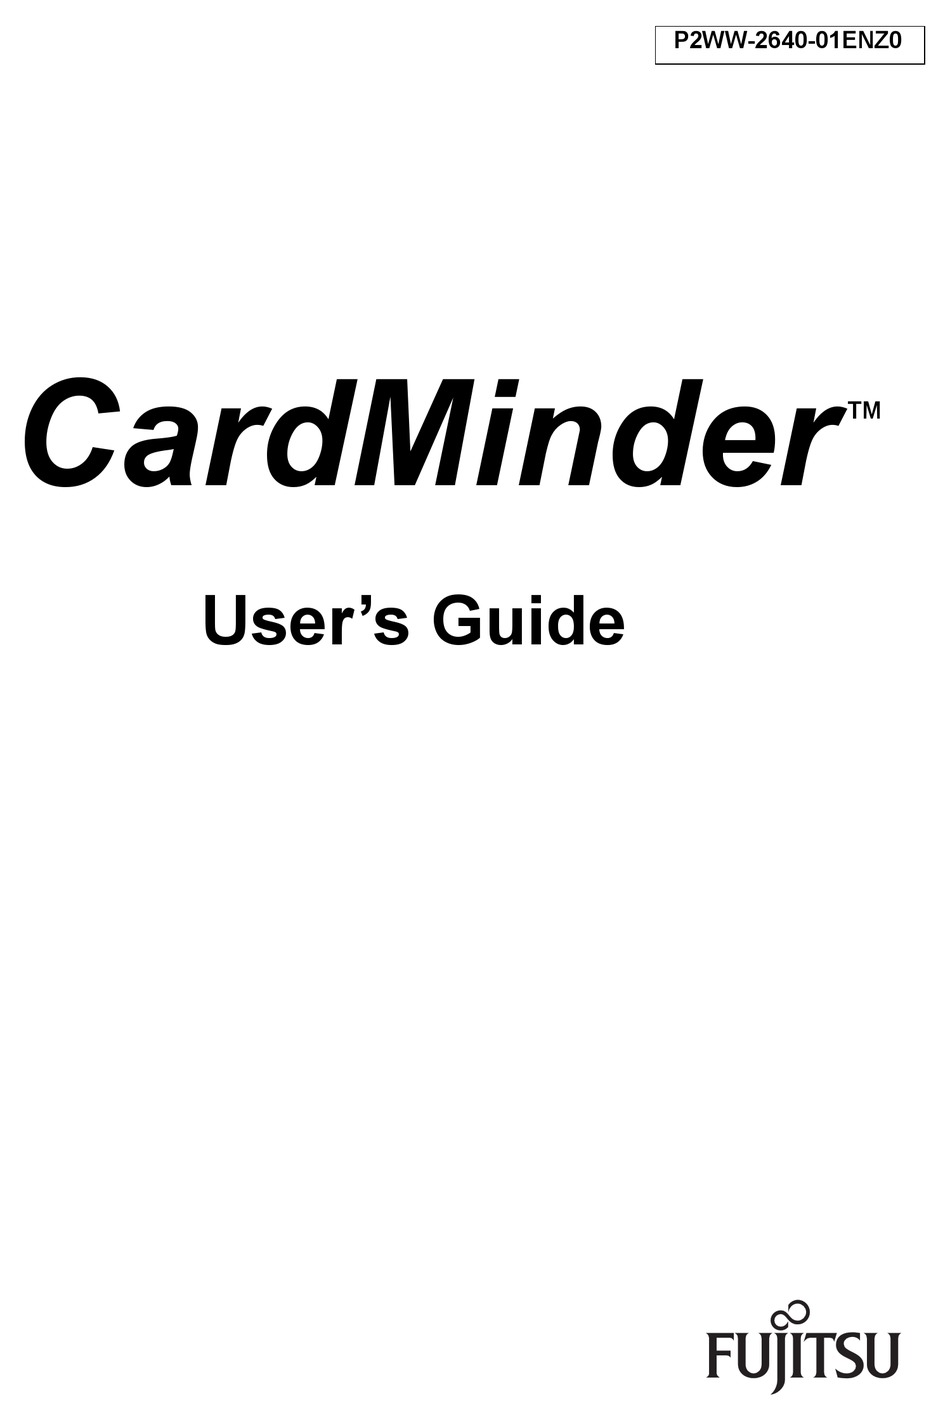 cardminder shared